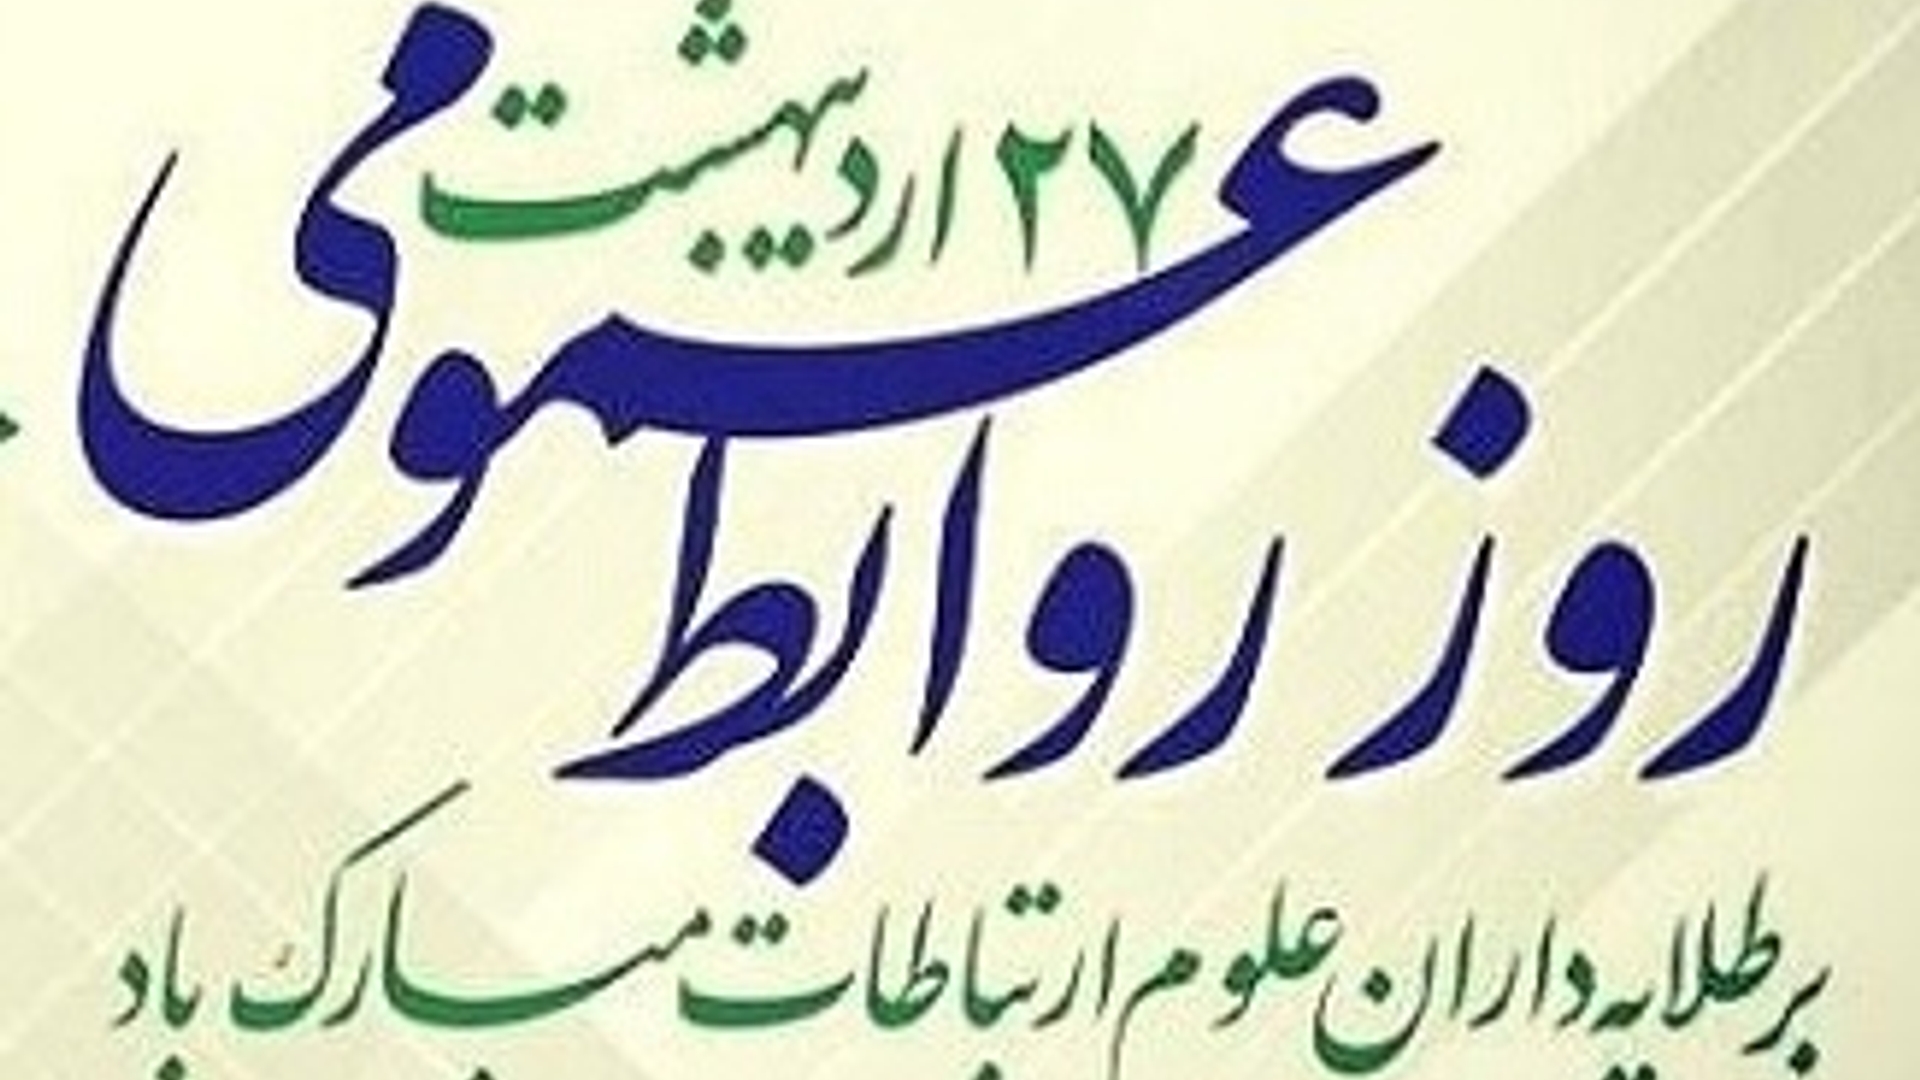 فرماندارشهرستان خنداب روز ارتباطات و روابط عمومی را به تلاشگران این عرصه تبریک گفت.